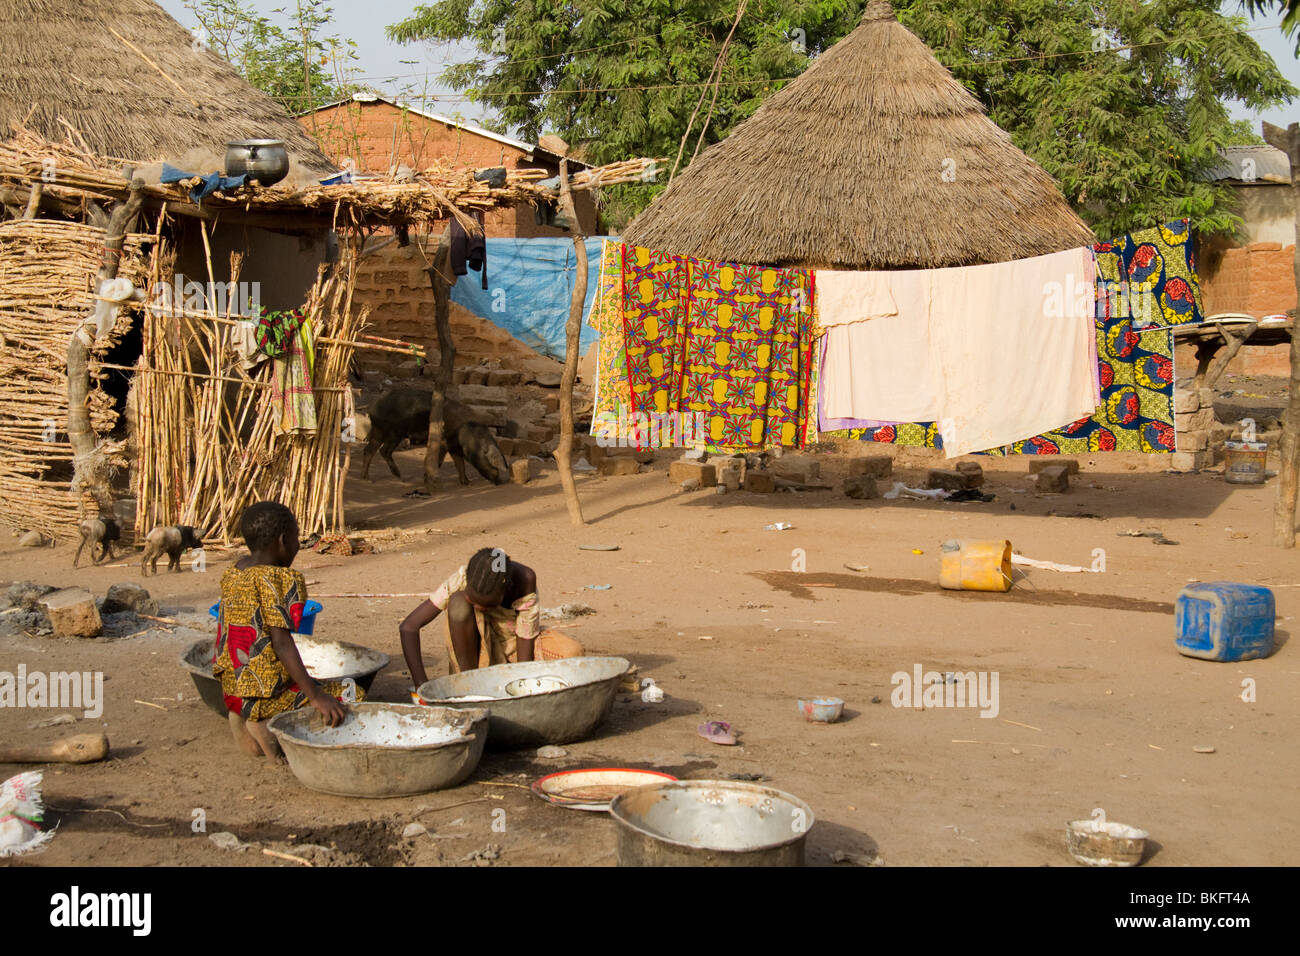 Des enfants nettoient des bols dans un village de la région de Garoua, Cameroun Banque D'Images